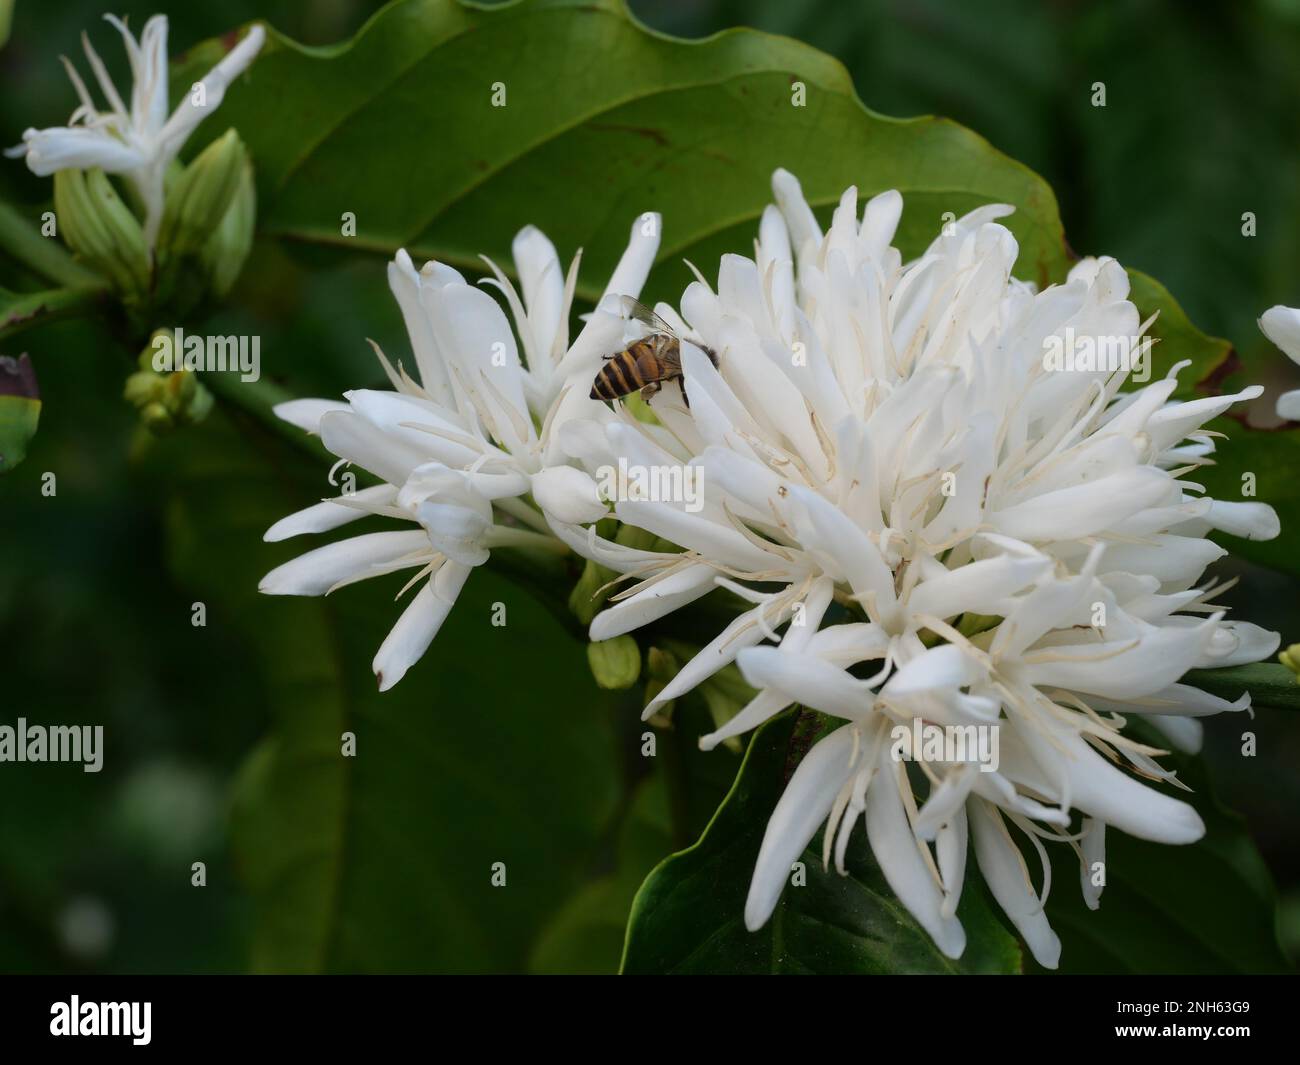 Honigbiene auf Robusta-Kaffee blüht auf Baumpflanze mit grünem Blatt mit schwarzer Hintergrundfarbe. Blütenblätter und weiße Bühnenblüten Stockfoto